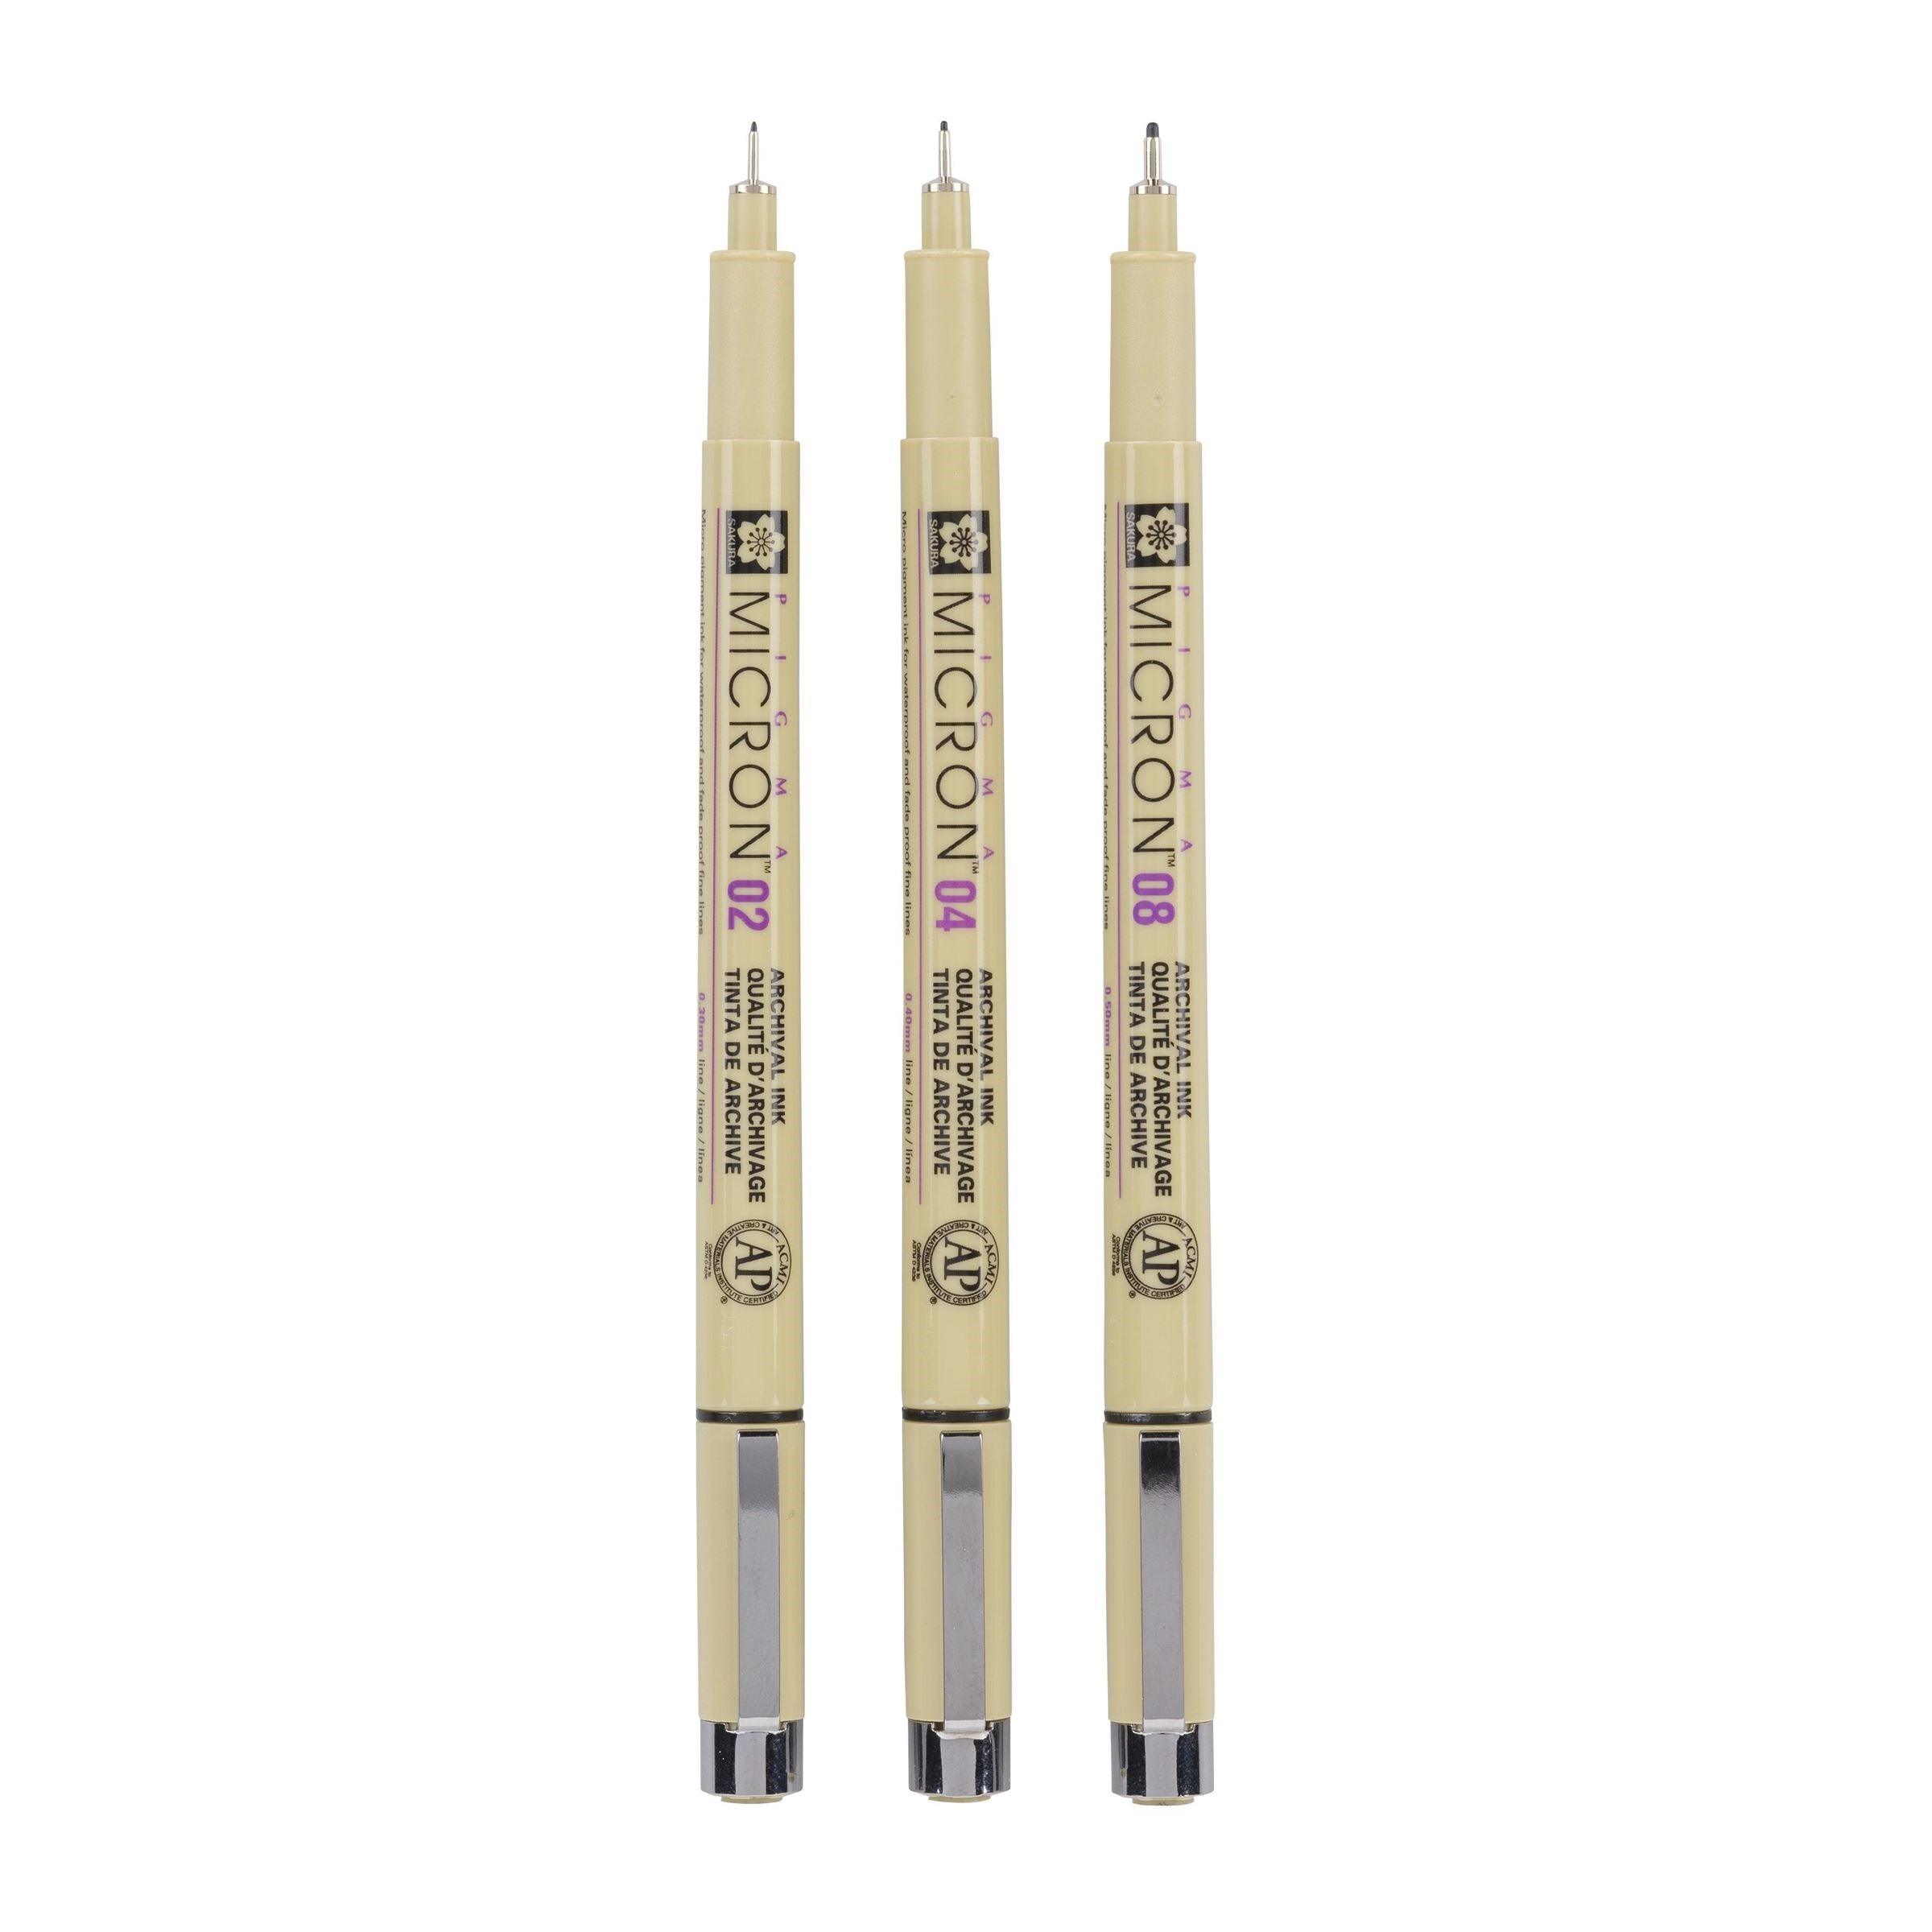 Pigma Micron fineliner set | 3 pens, 0.3 mm + 0.4 mm + 0.5 mm, black